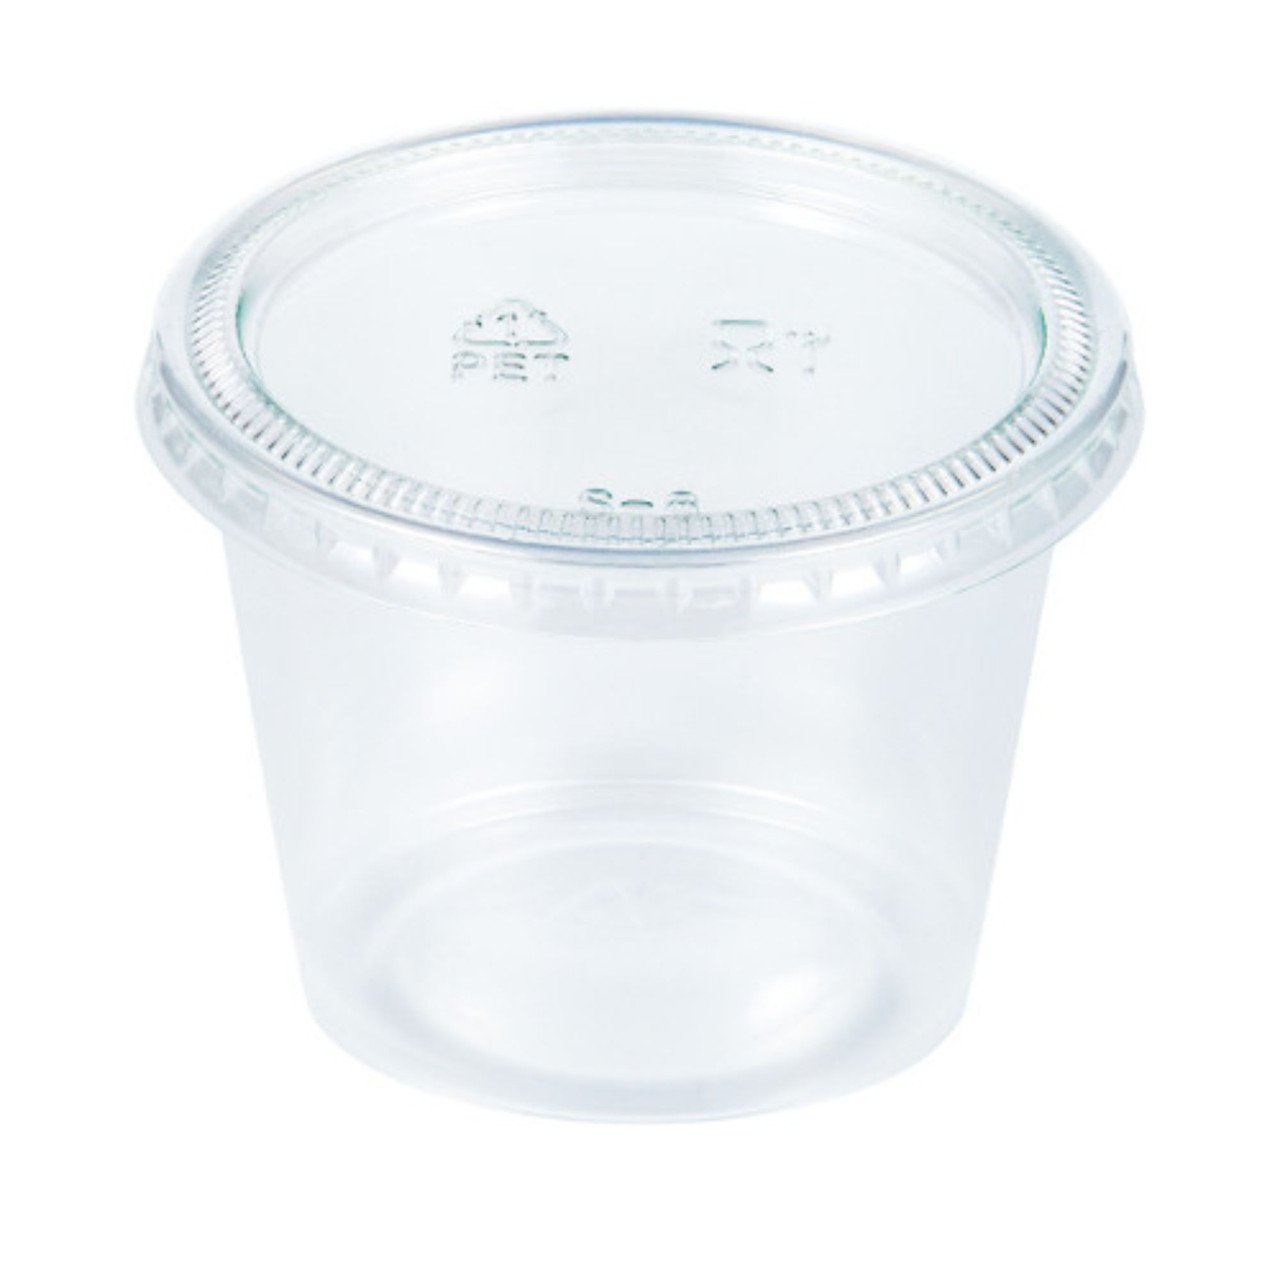 360 Sets - 4 oz Plastic Portion Cups with Lids 4 oz Plastic Sauce C